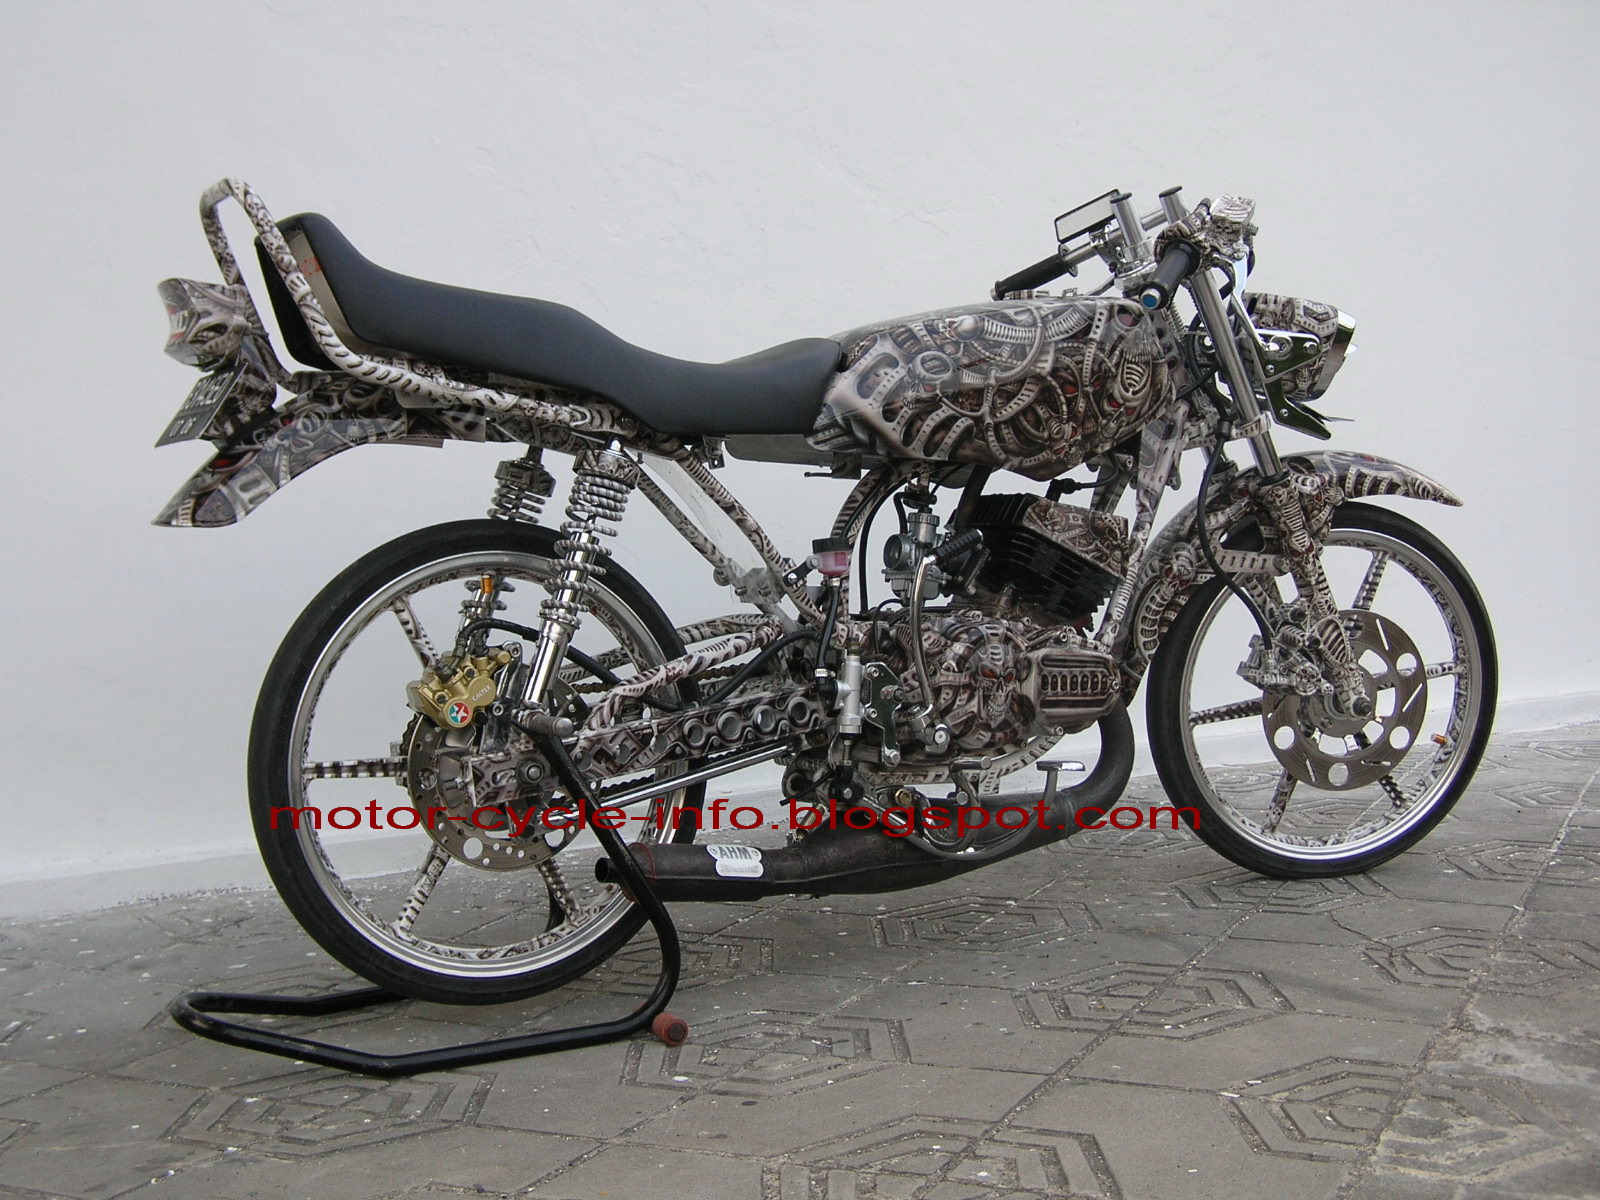 Modifikasi Airbrush Yamaha Rx King 2014 Modifikasi Motor Keren